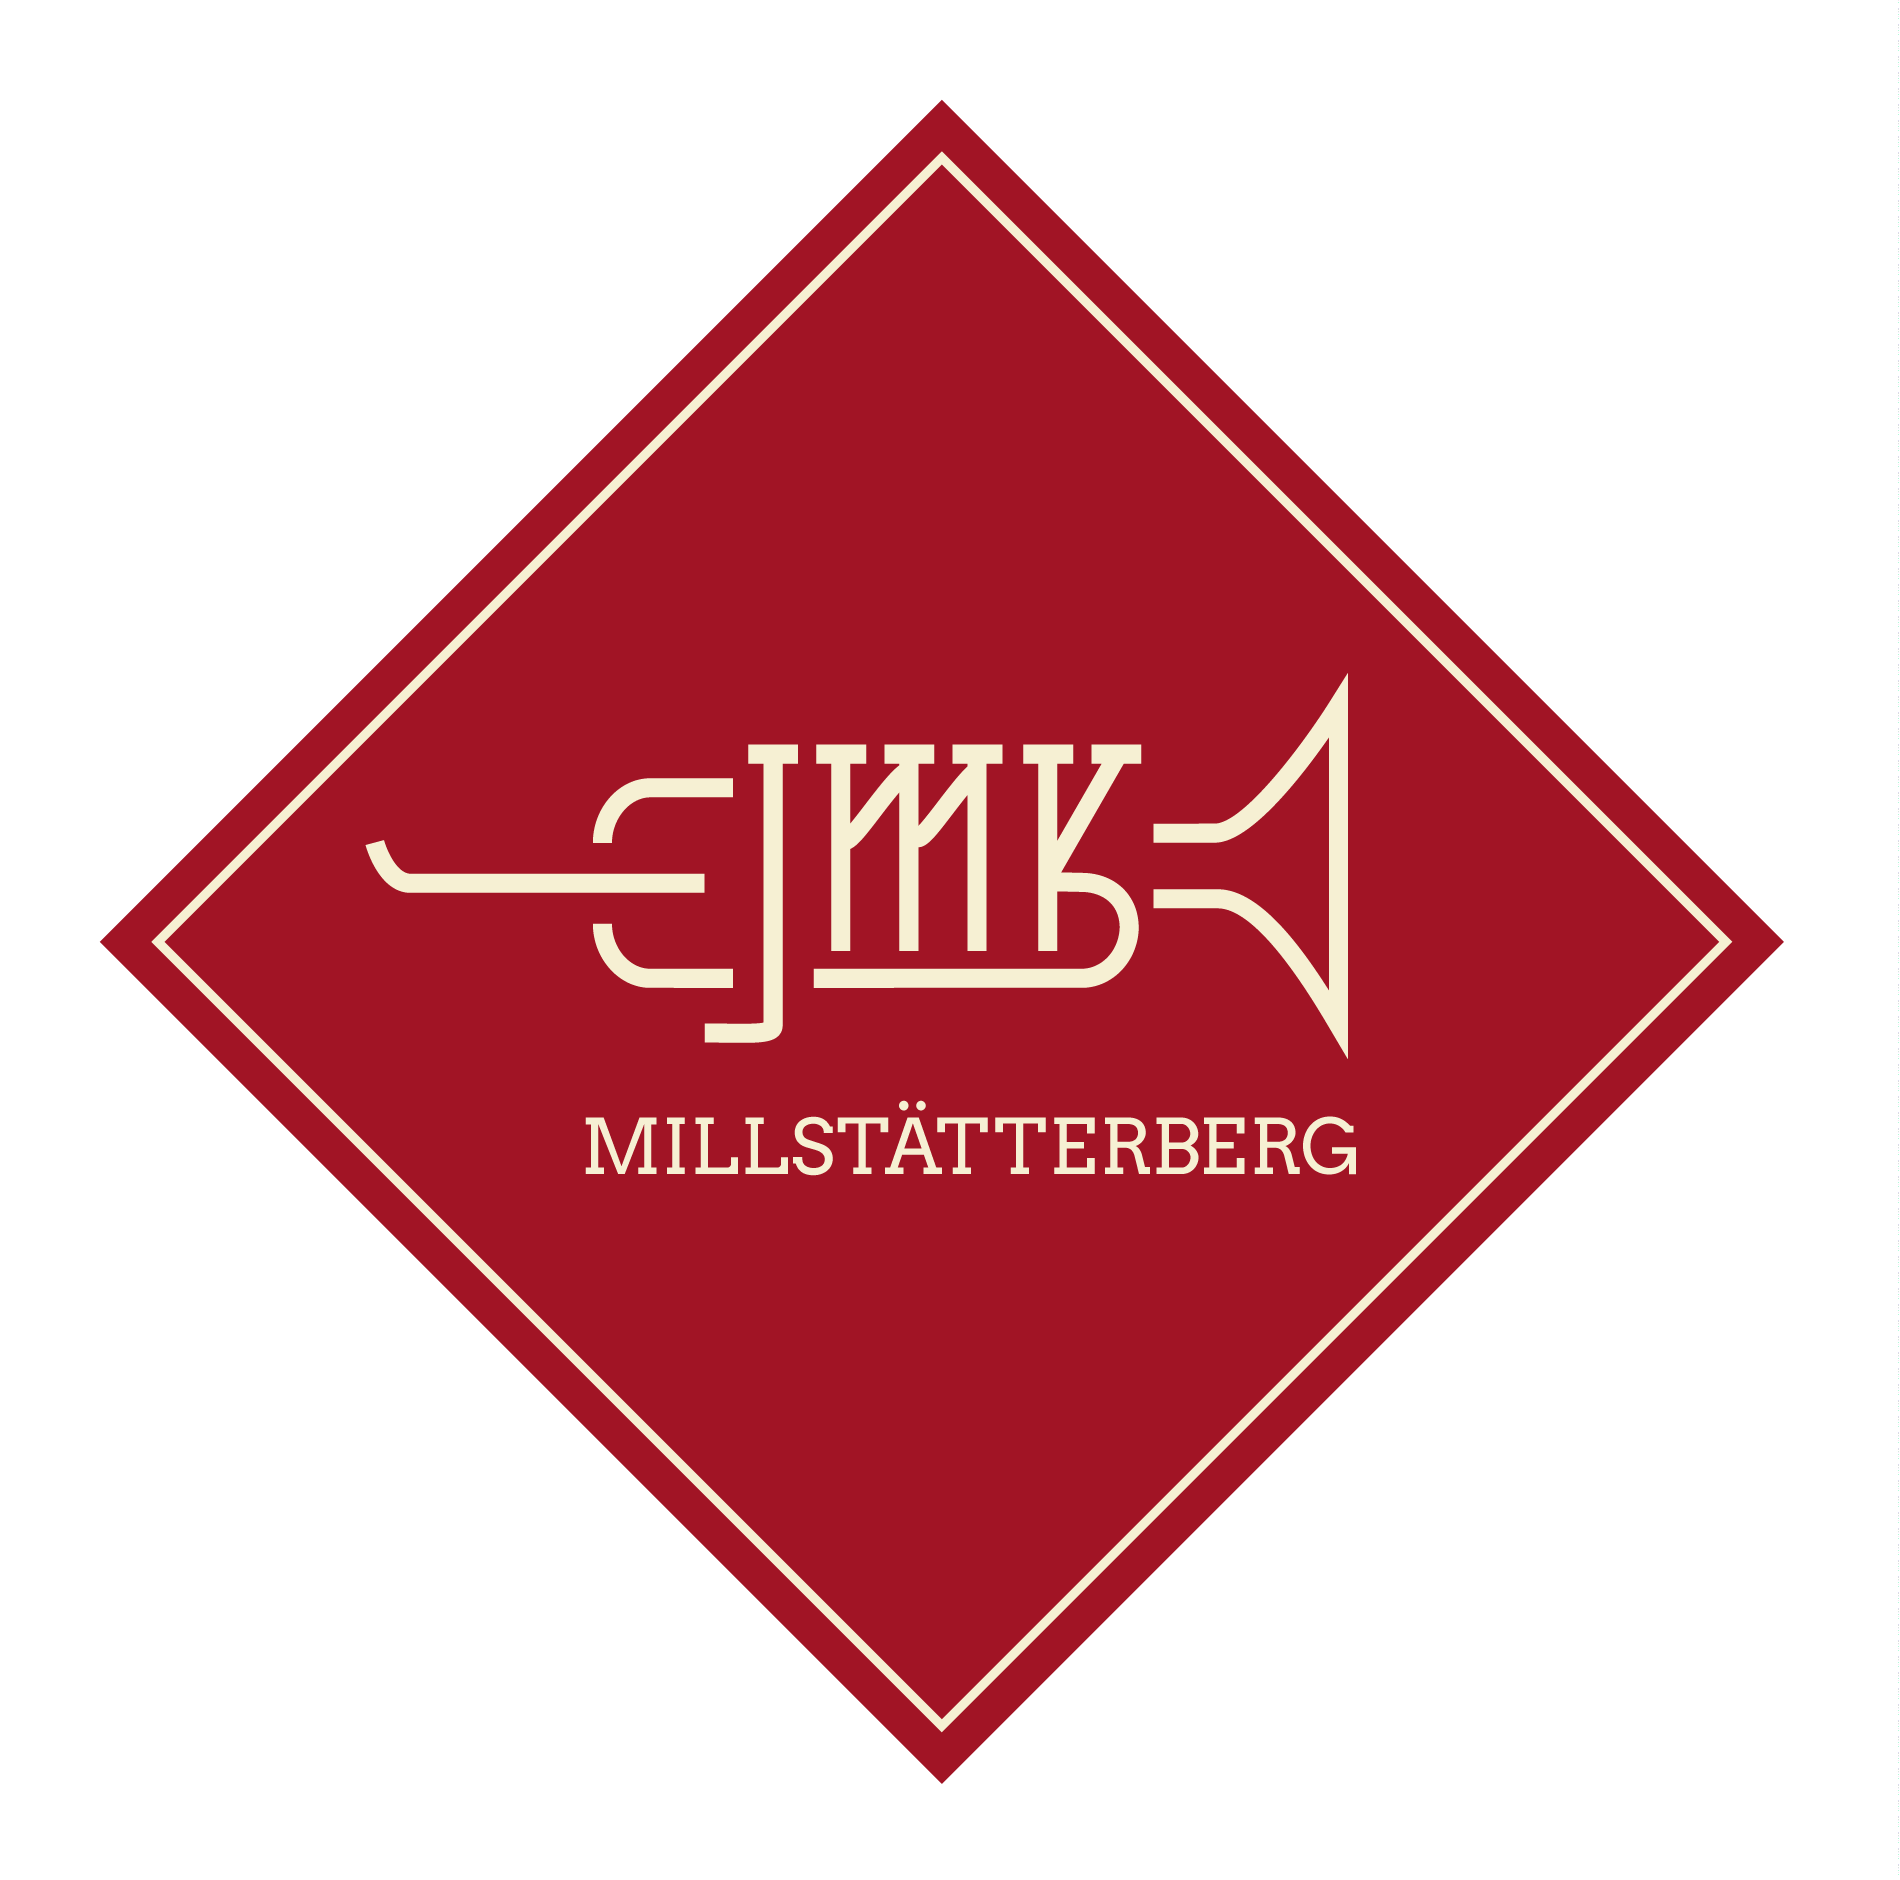 JMK Millstätterberg